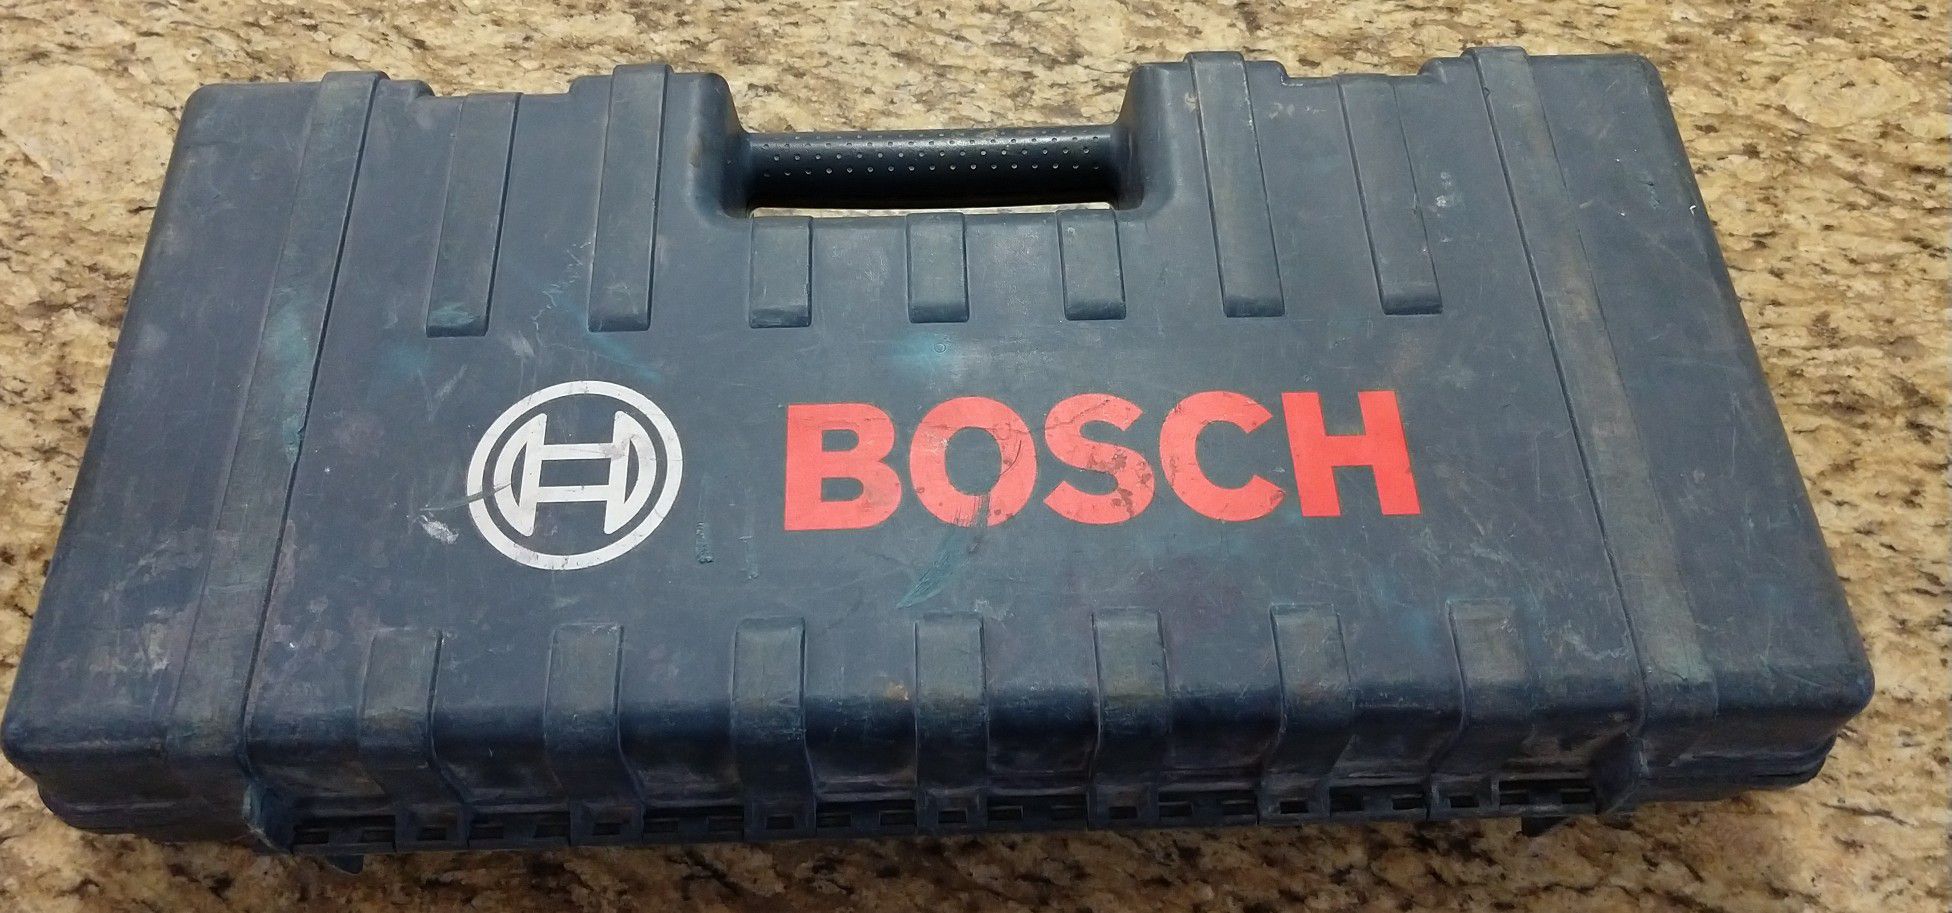 Bosch 11224VSR Rotary Hammer #156381-1